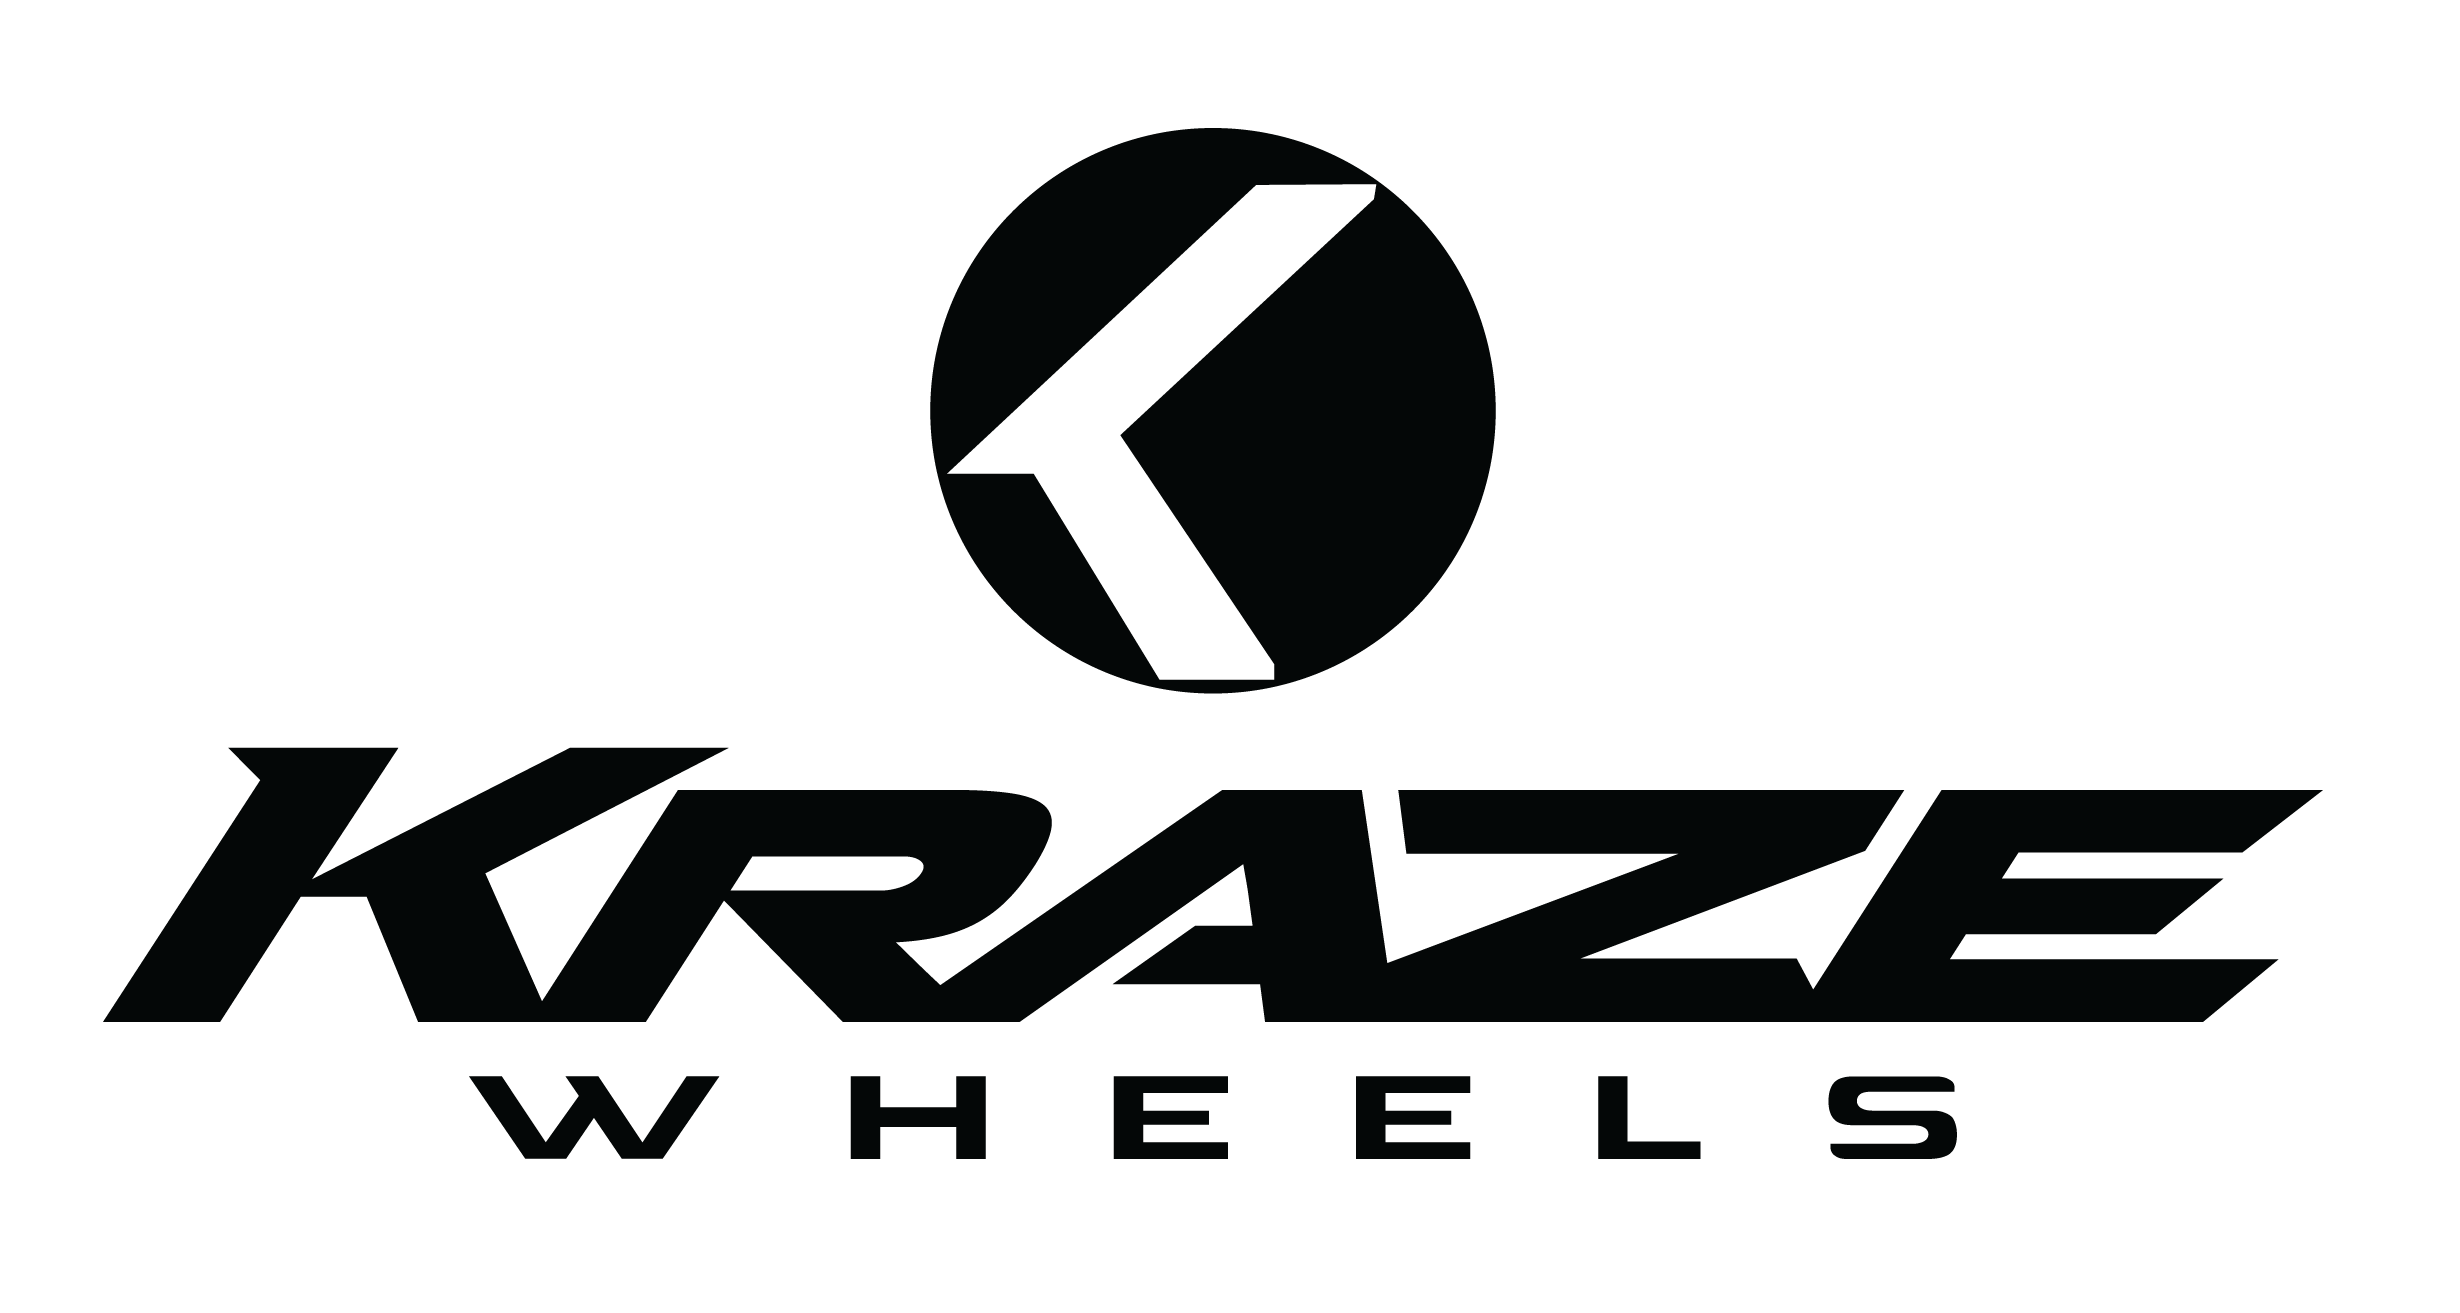 Brand logo for KRAZE tires